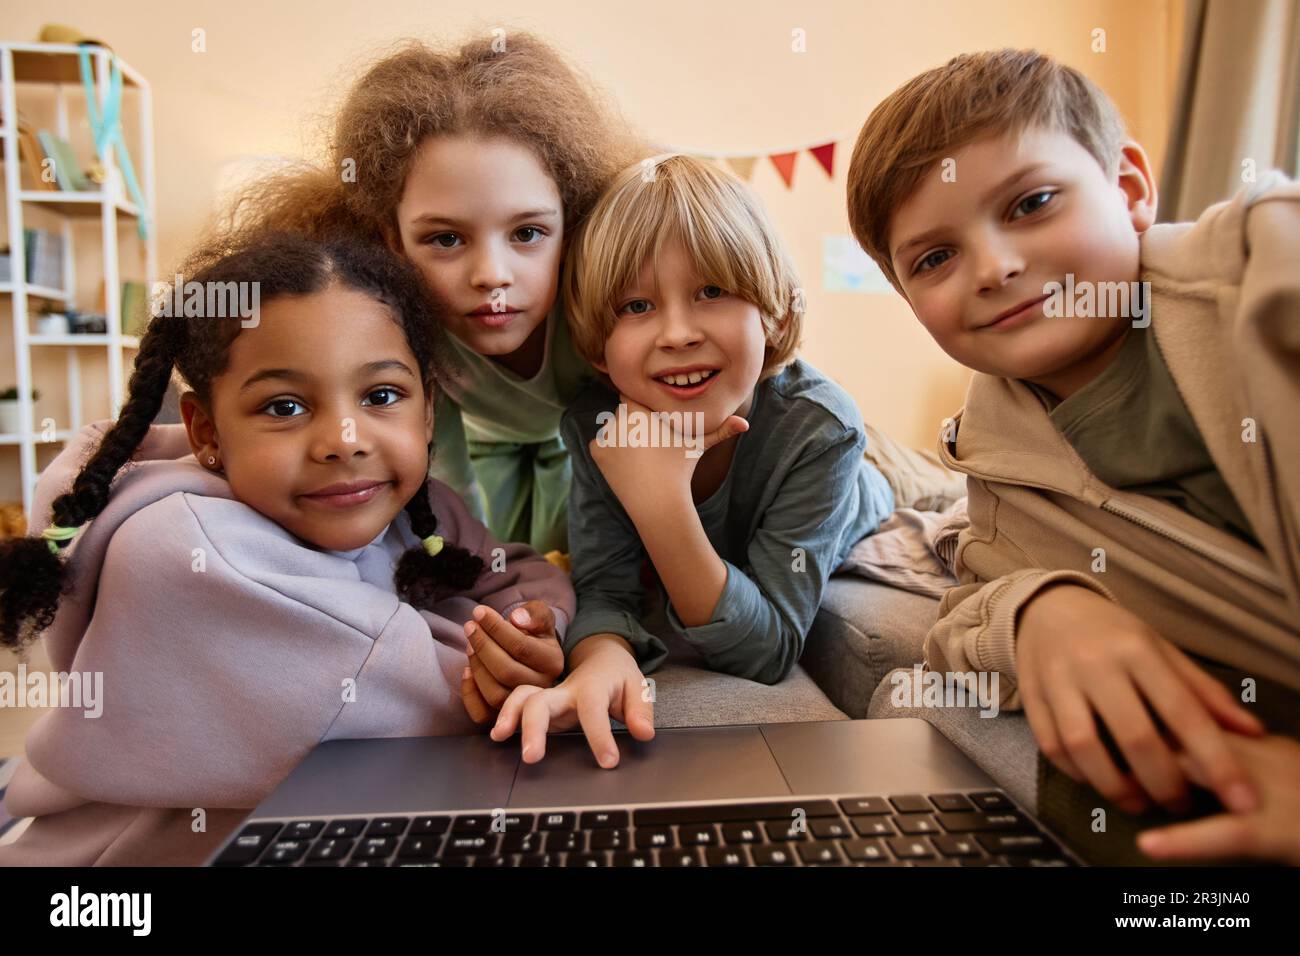 POV-Gruppe von Kindern, die zusammen auf einen Computerbildschirm schauen, sich über einen Laptop kuscheln und lächeln Stockfoto